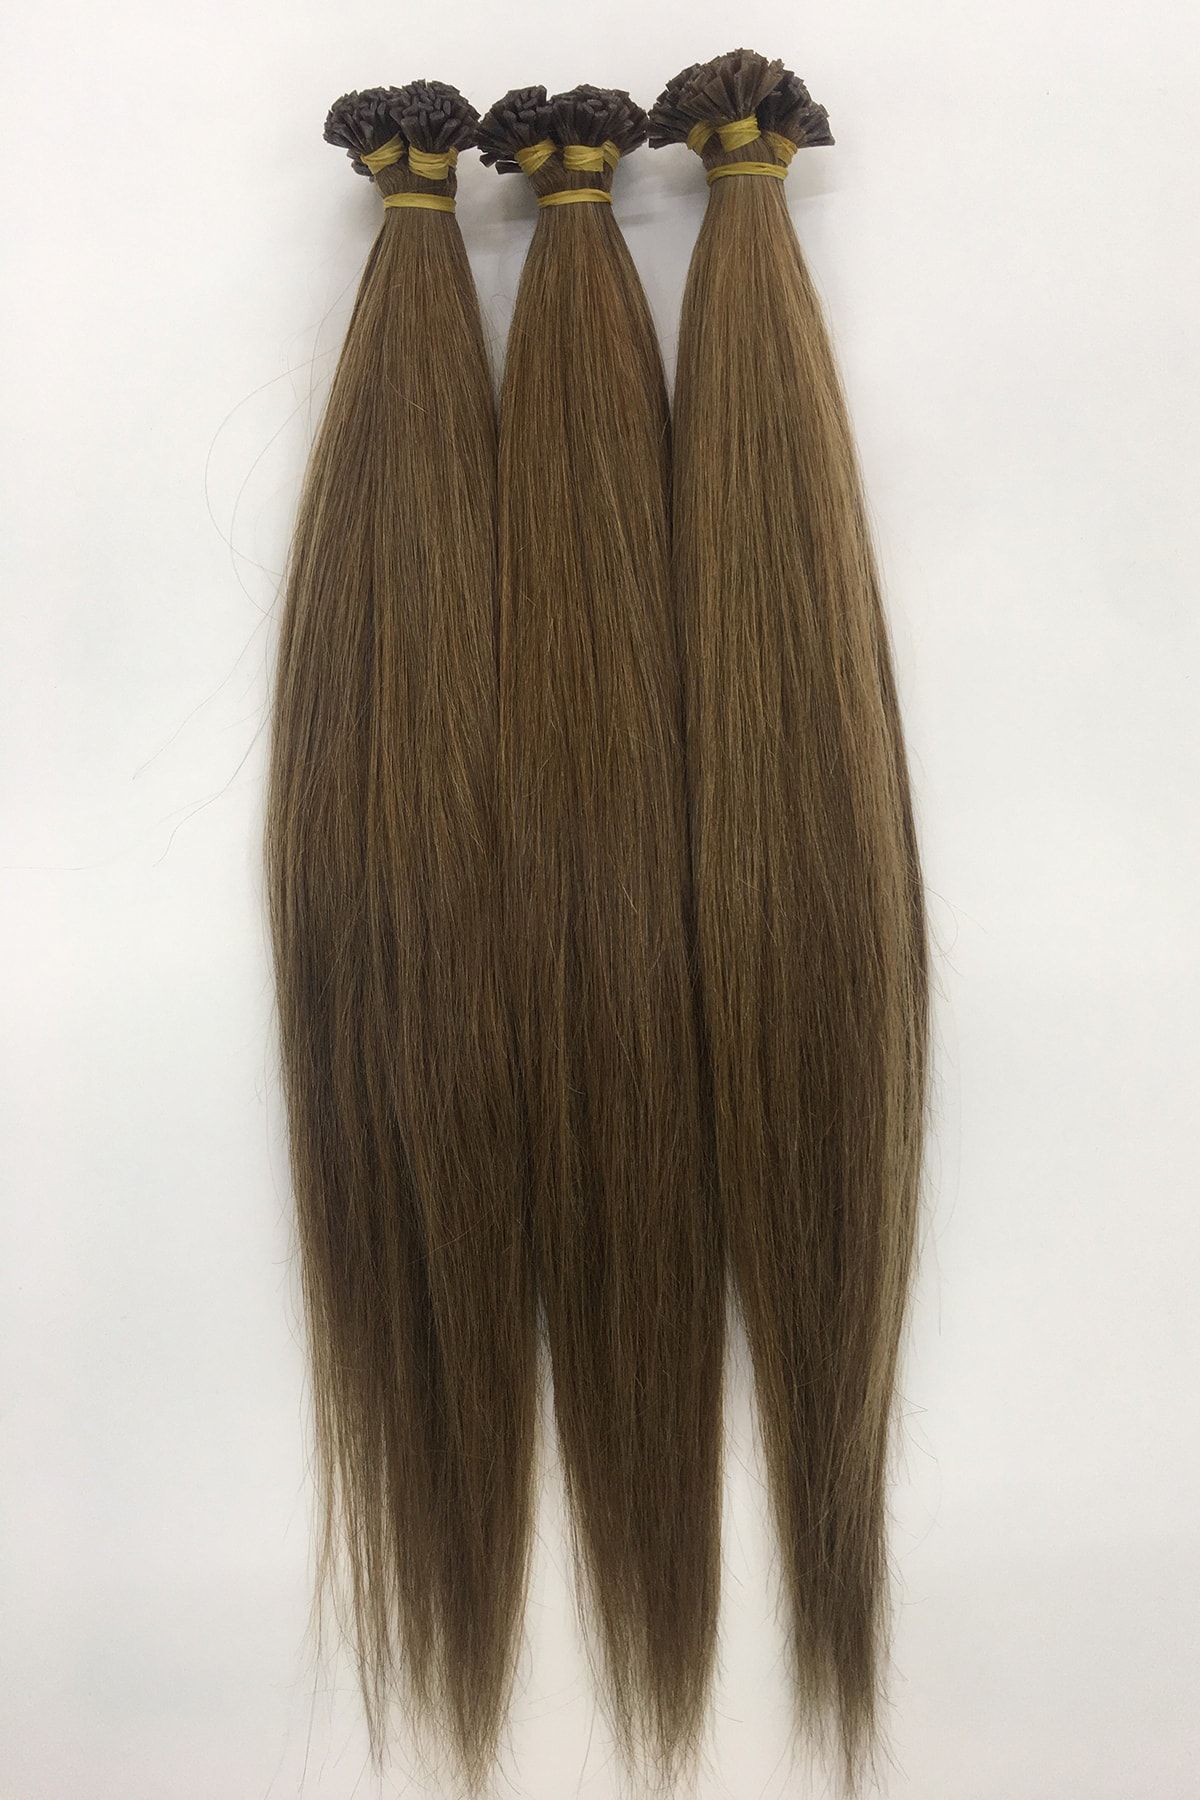 HalitCan HairKing Birinci Sınıf Yüzde Yüz Gerçek Insan Saçı Koyu Kumral 7/1 Saç Rengi 50 cm 100 Adet Mikro Kaynak